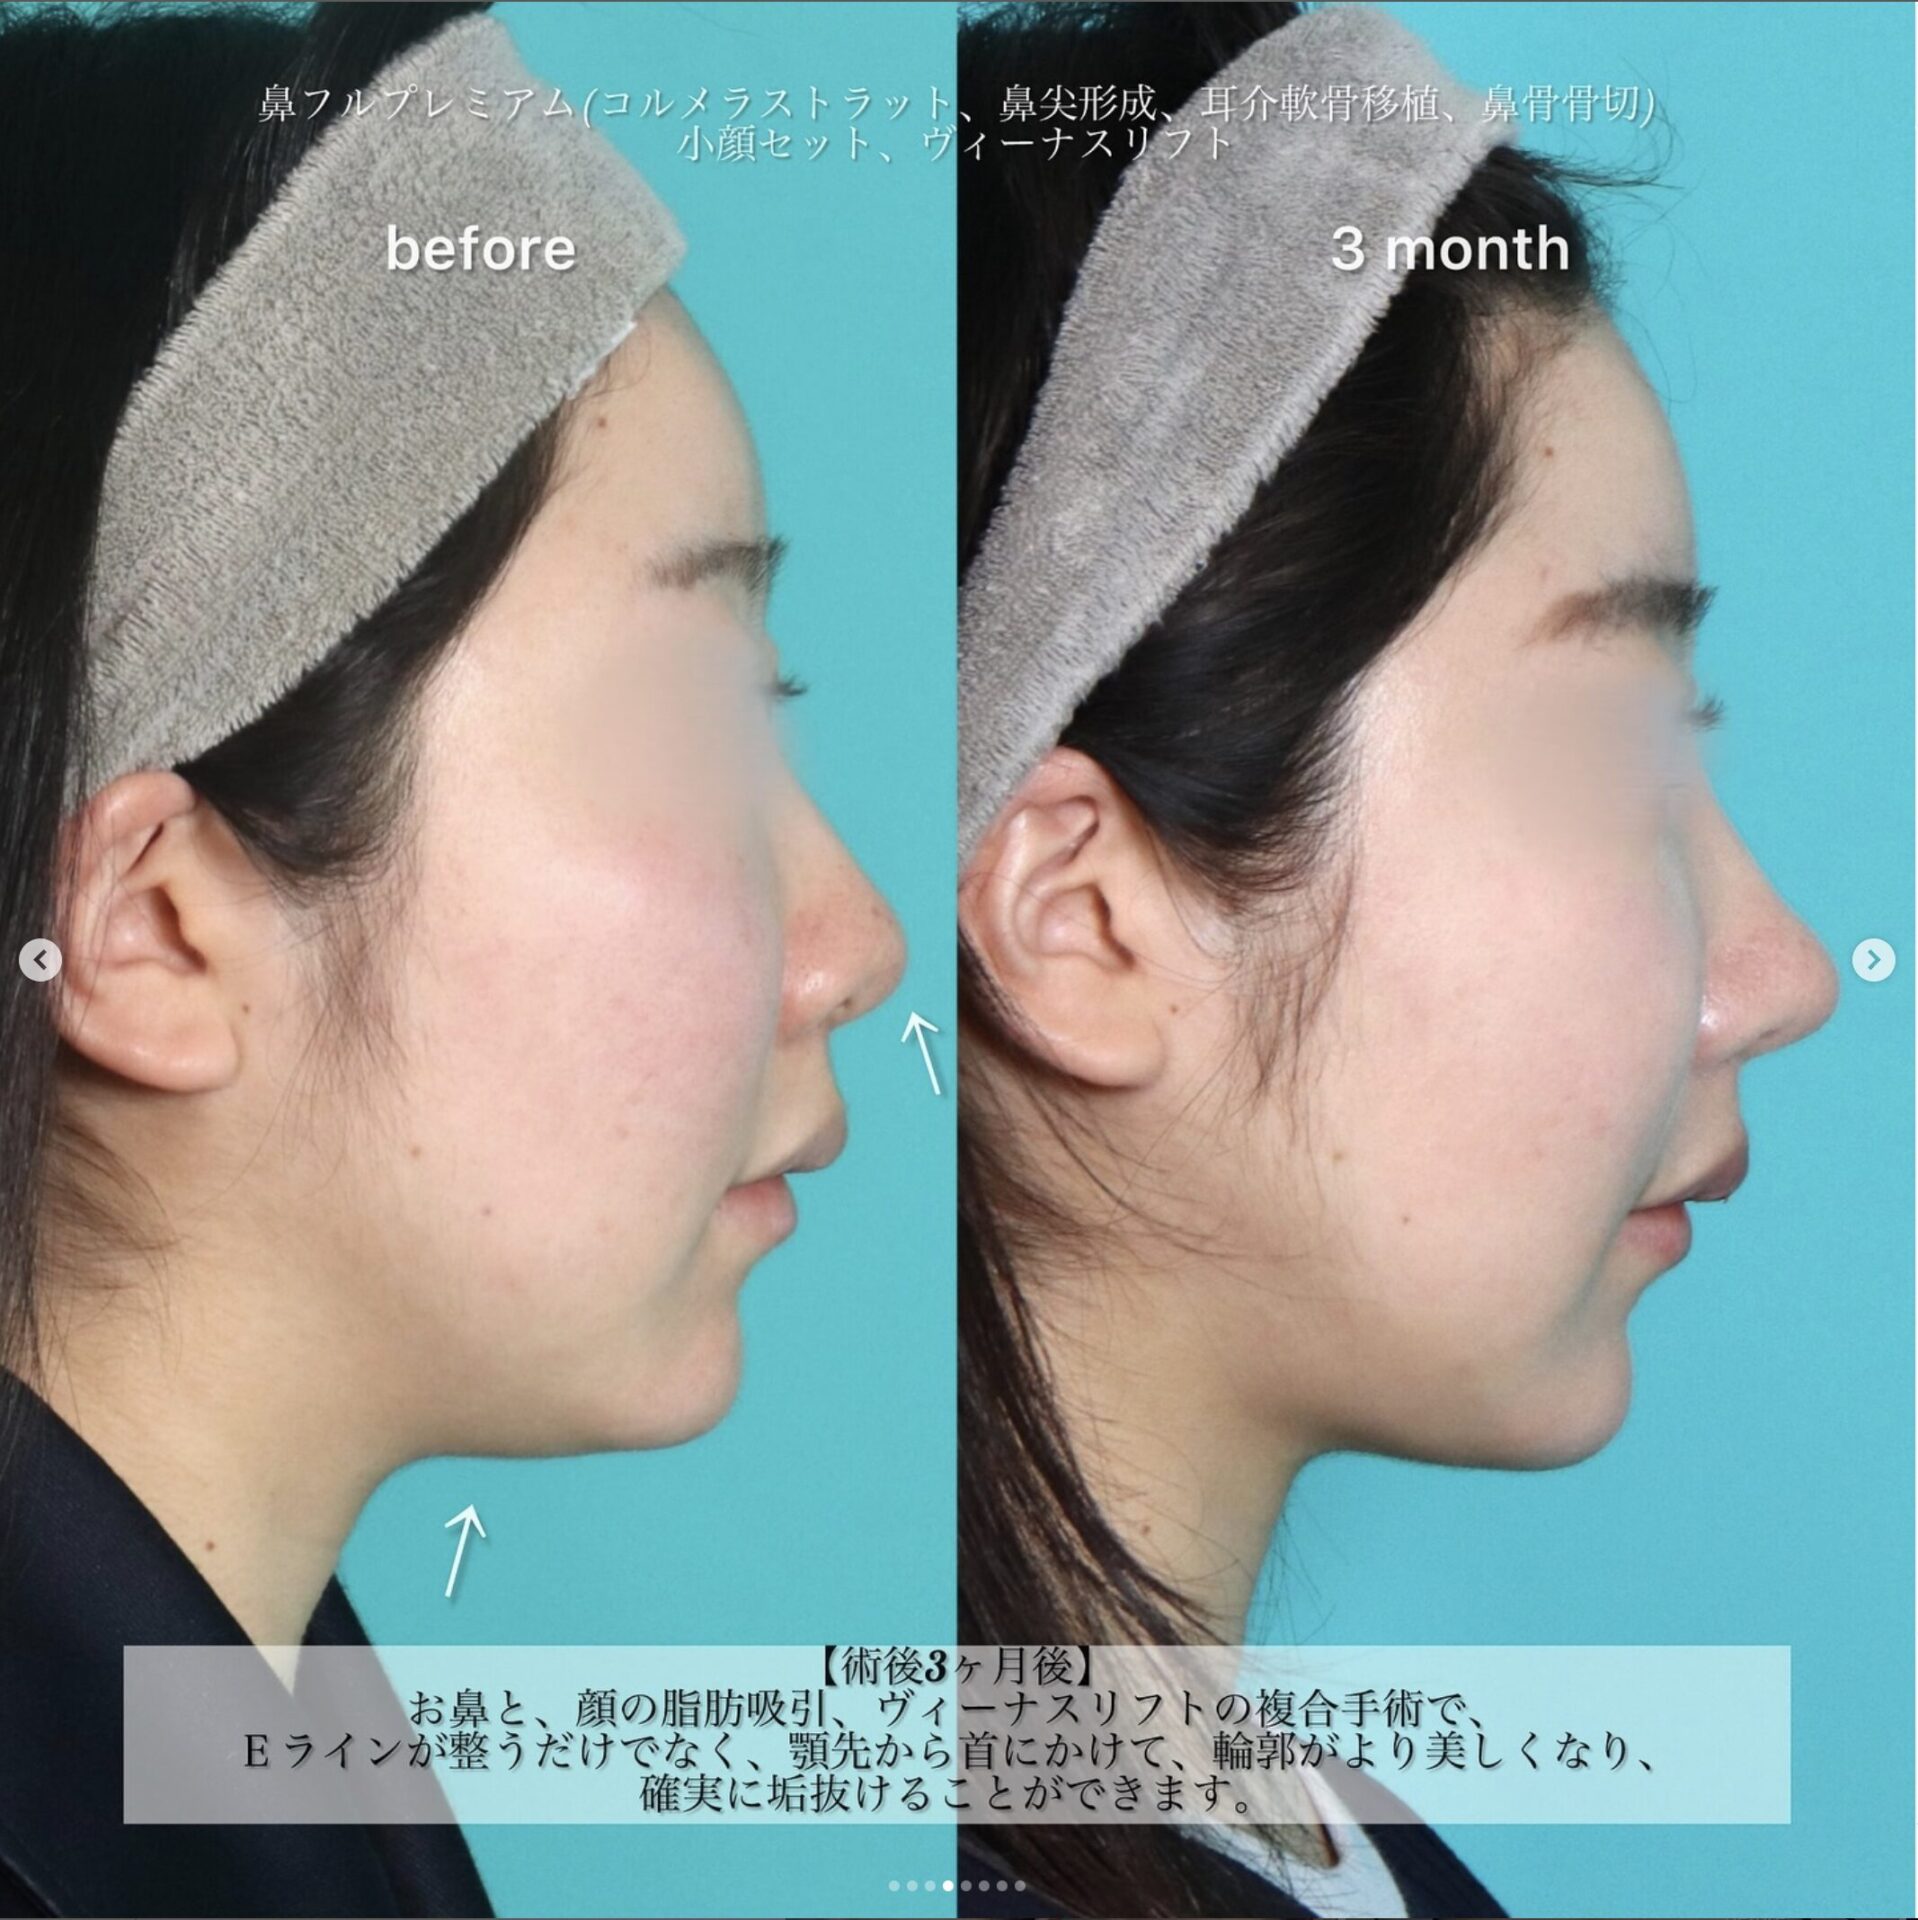 鼻フルコースプレミアム、小顔セット、糸リフト施術前後イメージ